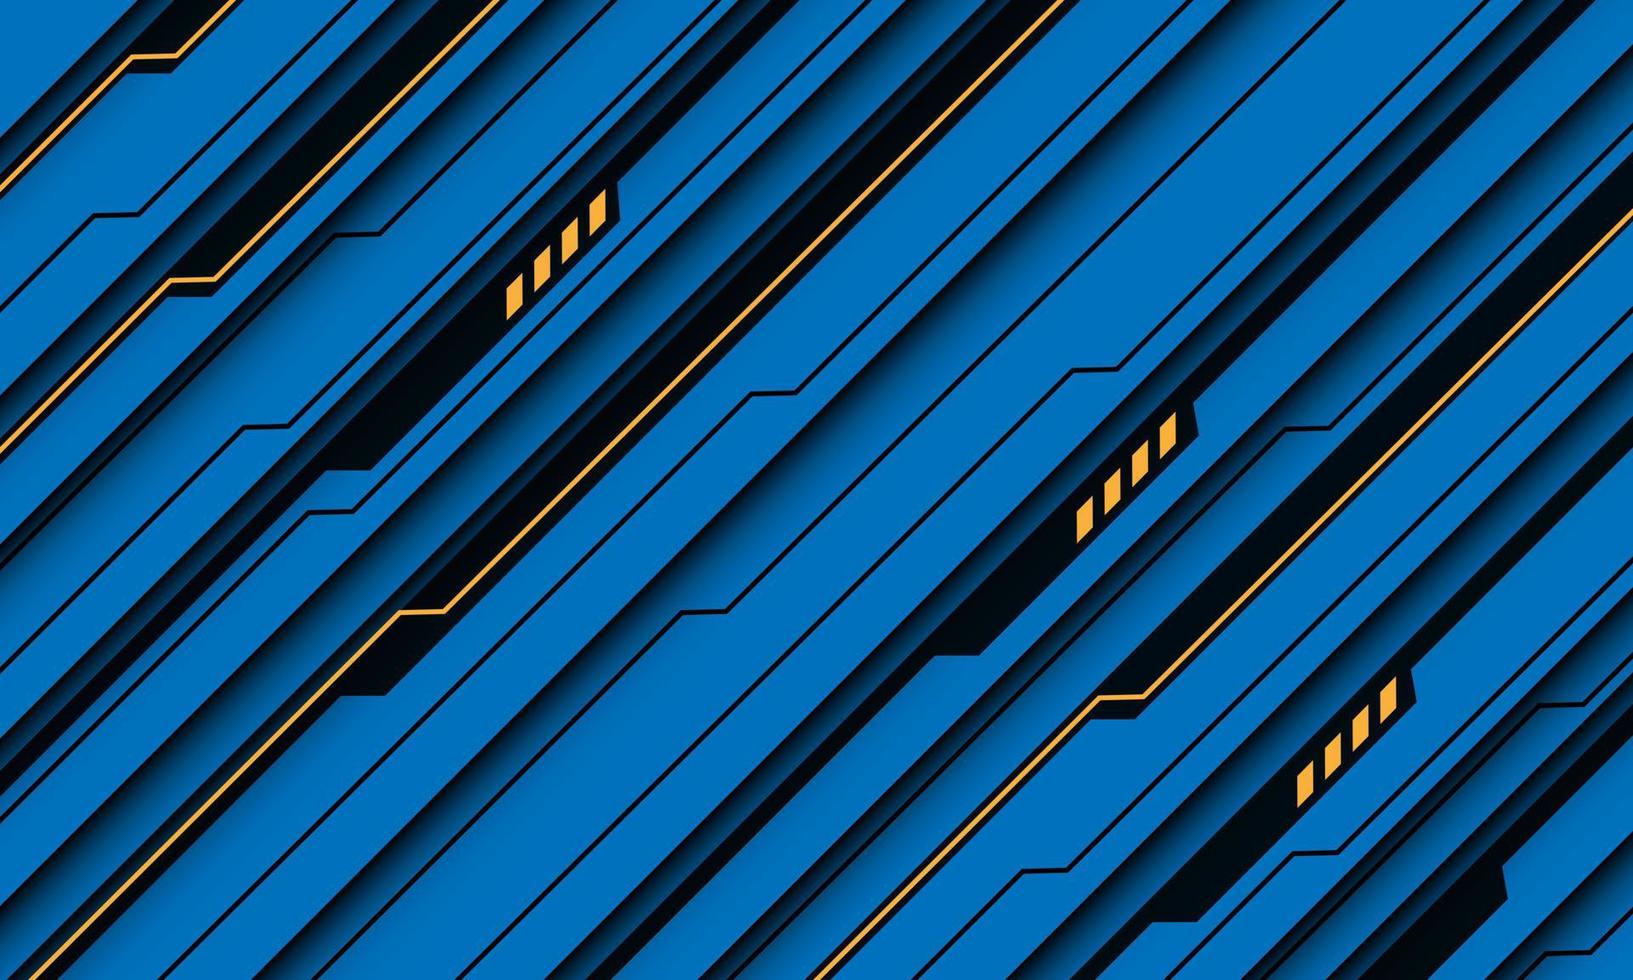 abstractb jaune noir ligne circuit cyber slash dynamique géométrique sur bleu design moderne technologie futuriste fond vecteur